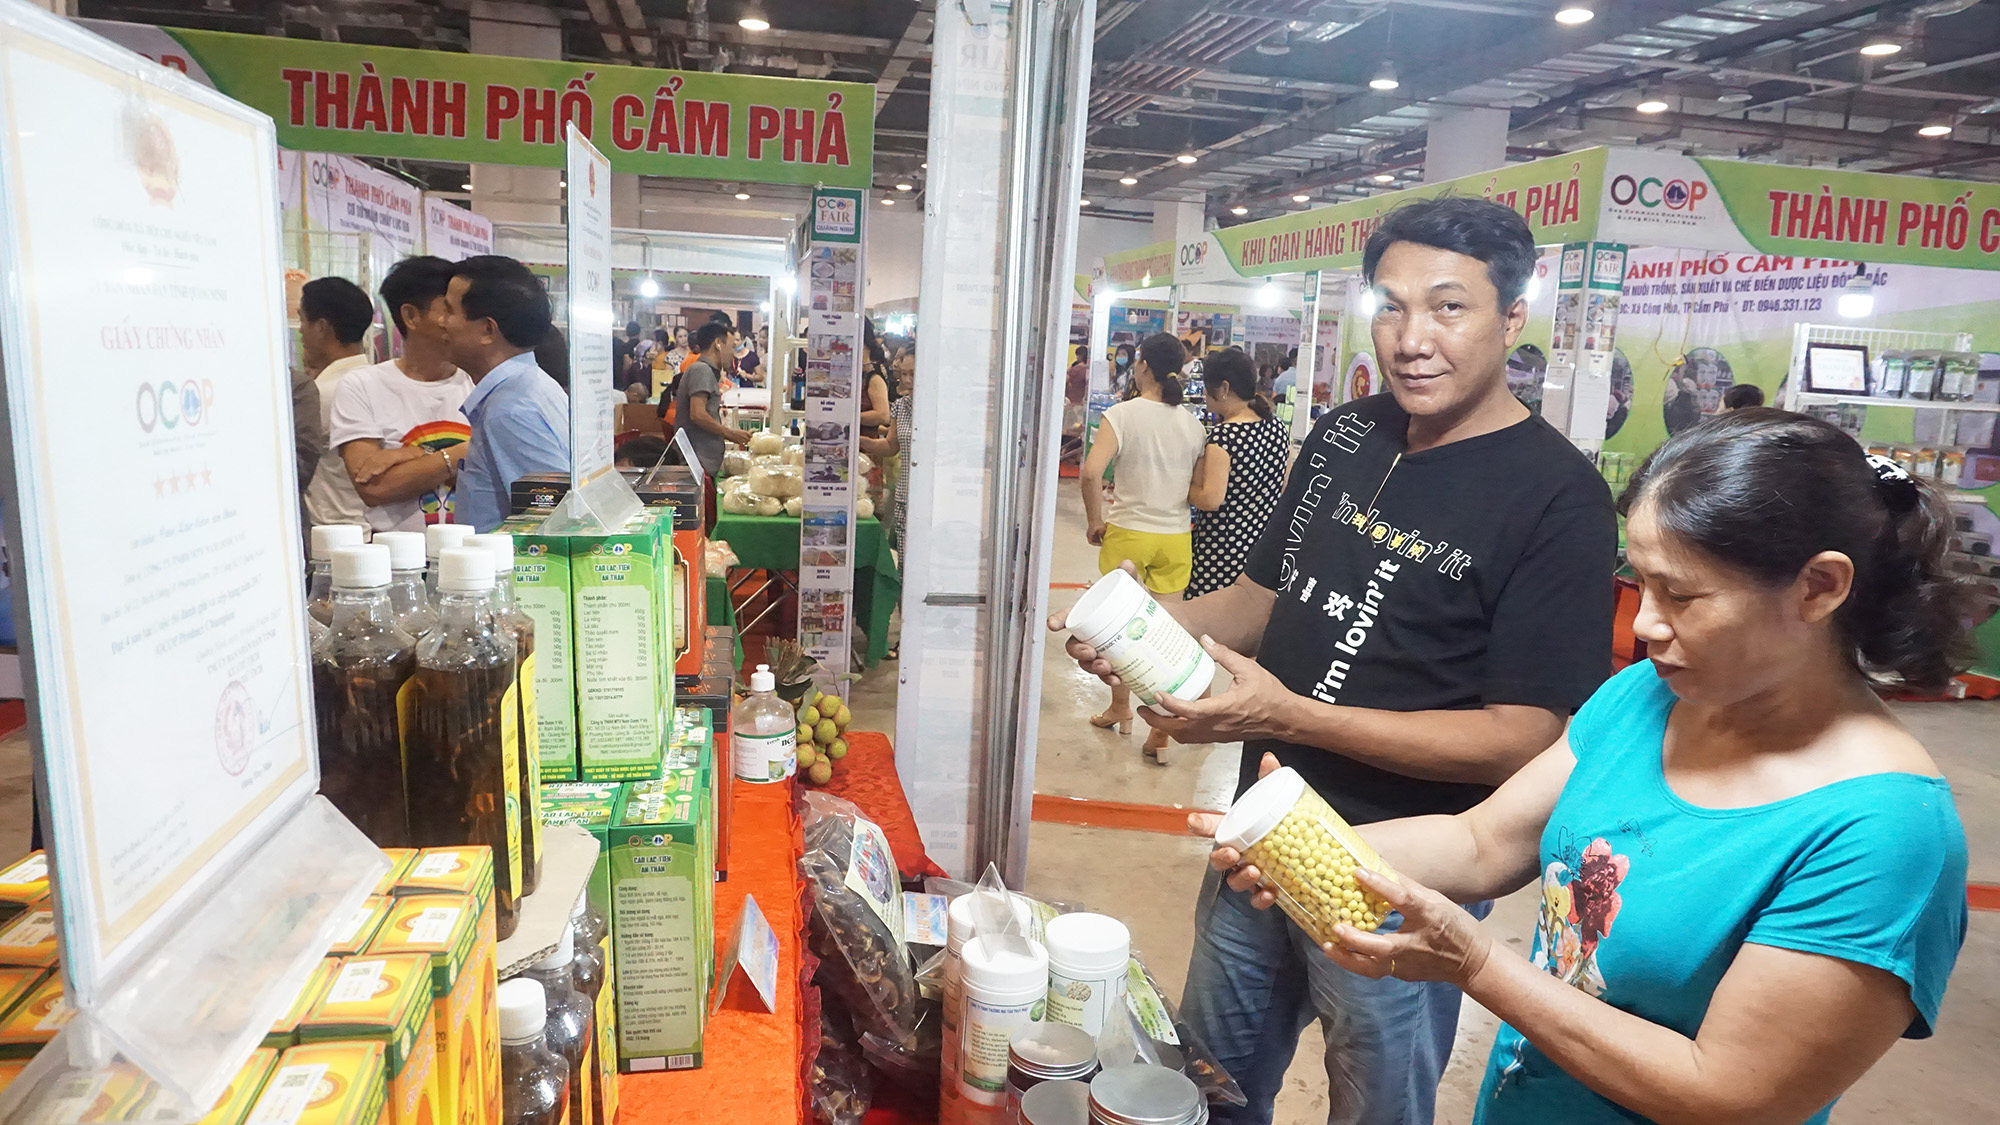 Người dân đến mua sắm sản phẩm tại Hộ chợ OCOP Quảng Ninh - Hè 2020.